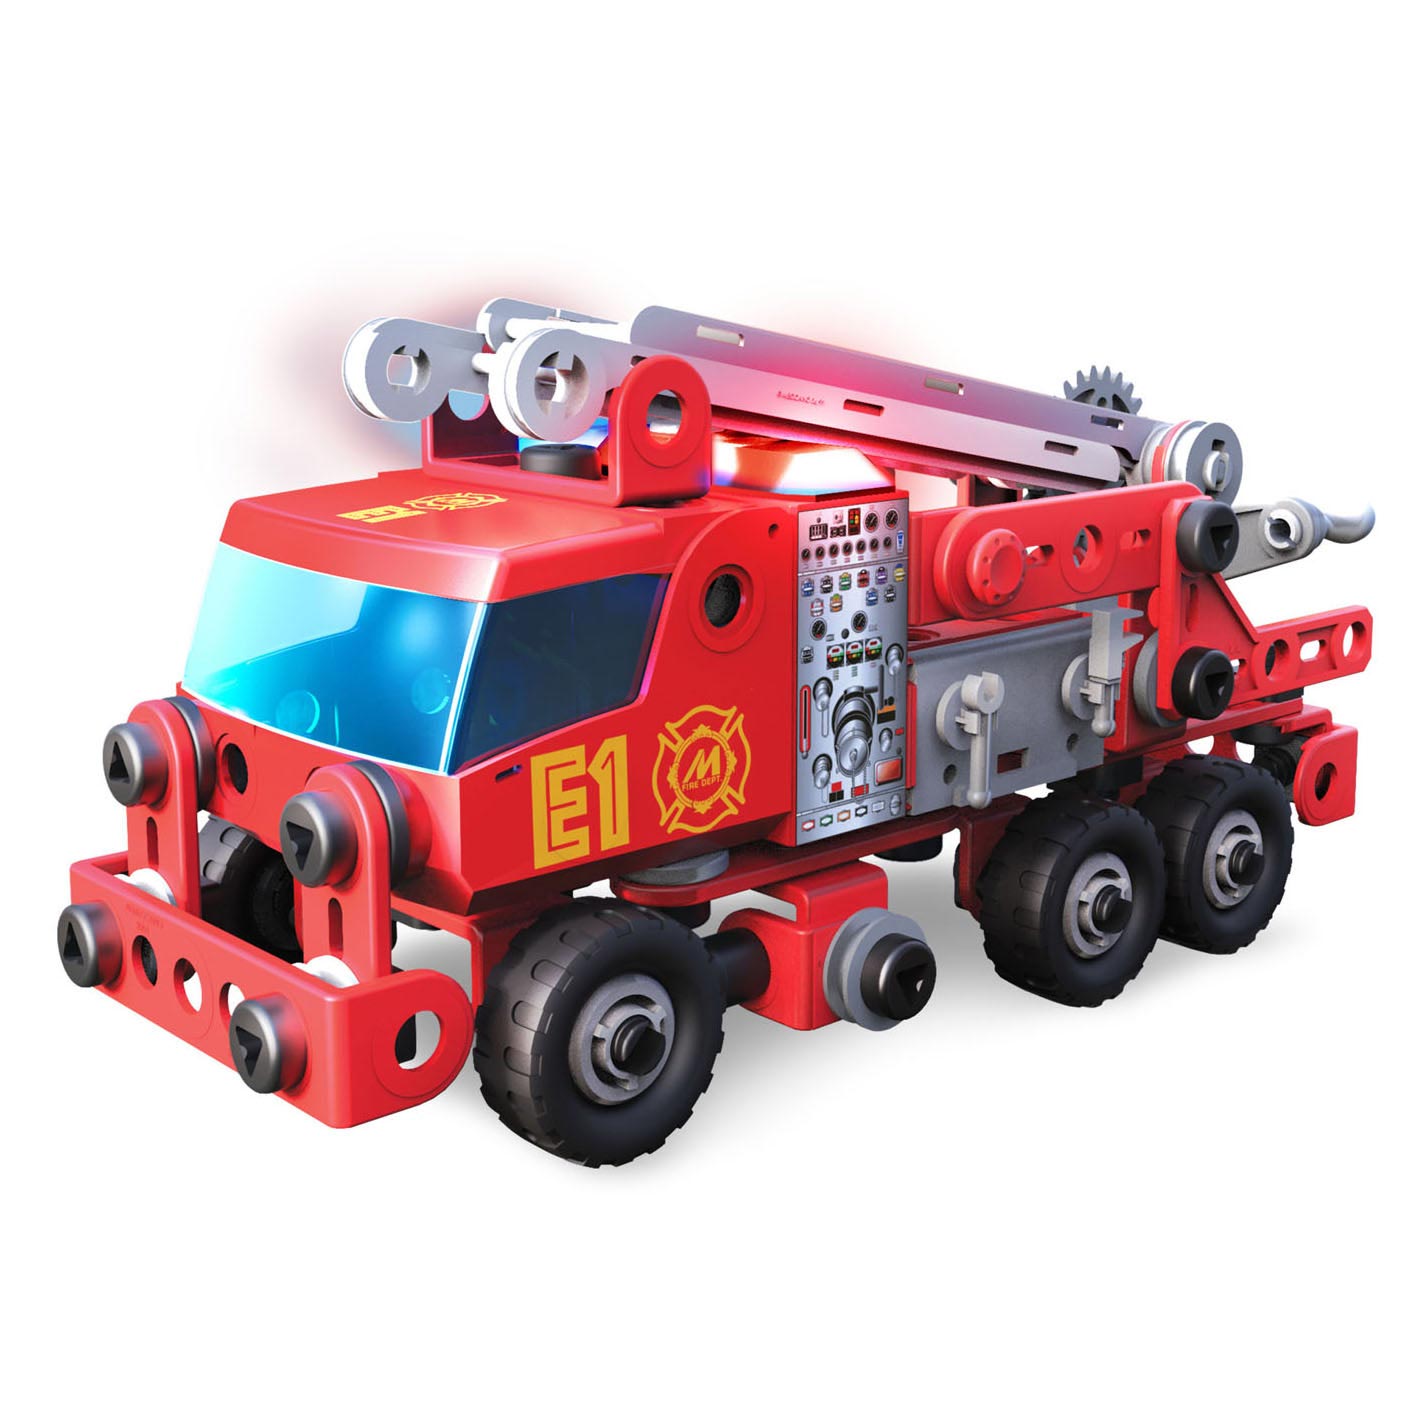 Meccano Junior – Feuerwehrauto STEAM Konstruktionsspielzeug